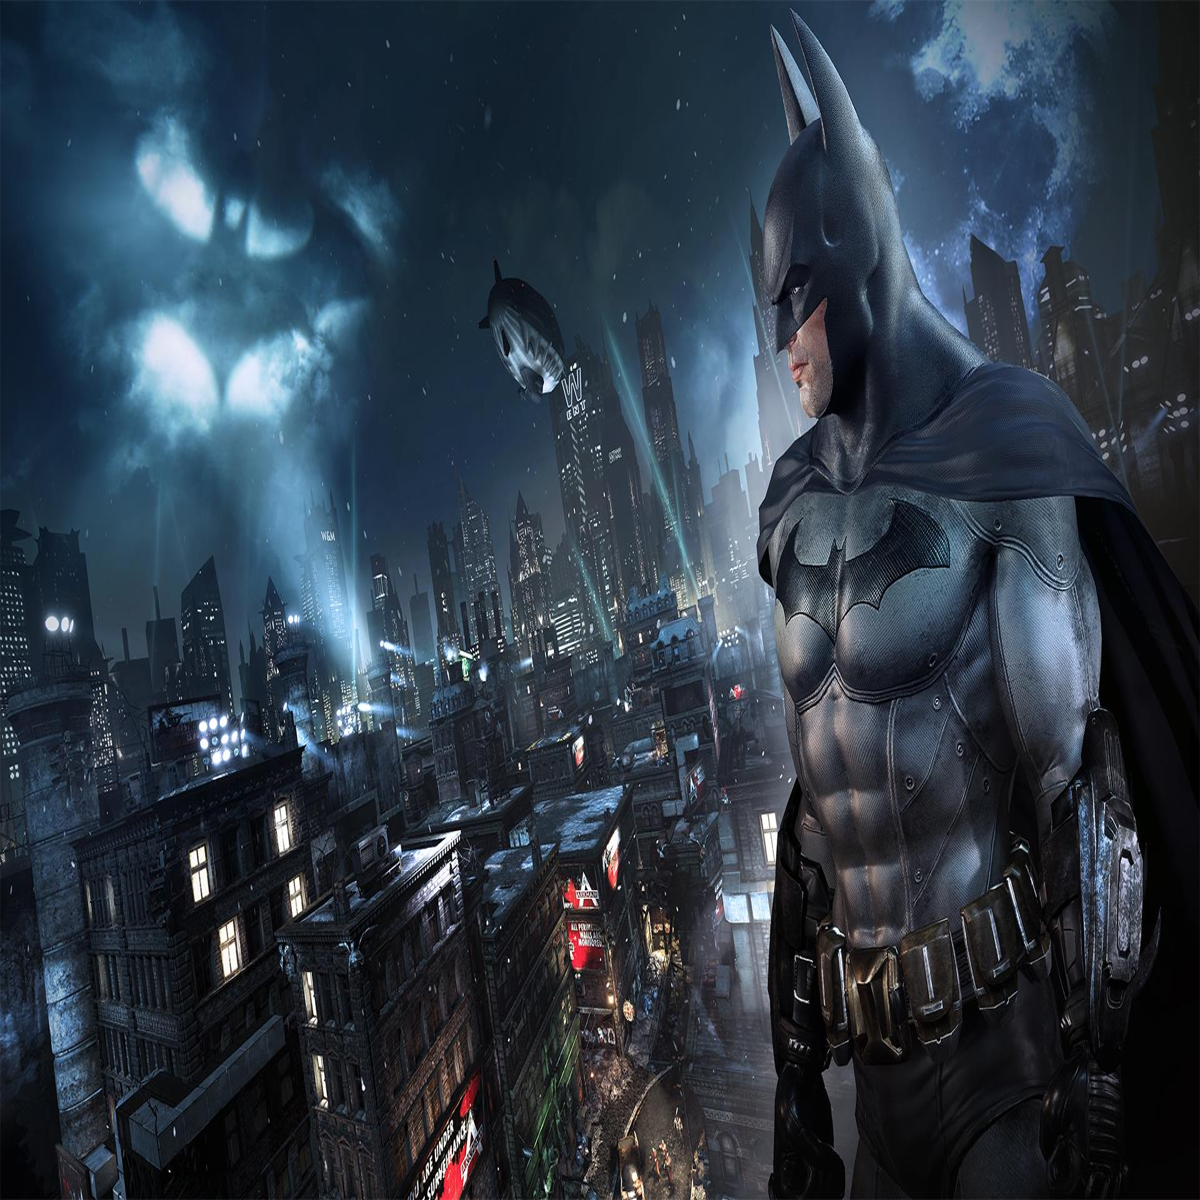 Batman epic games. Batman: Arkham collection. Batman Arkham collection (ps4). Batman Arkham Knight [ps4]. Batman: Return to Arkham.